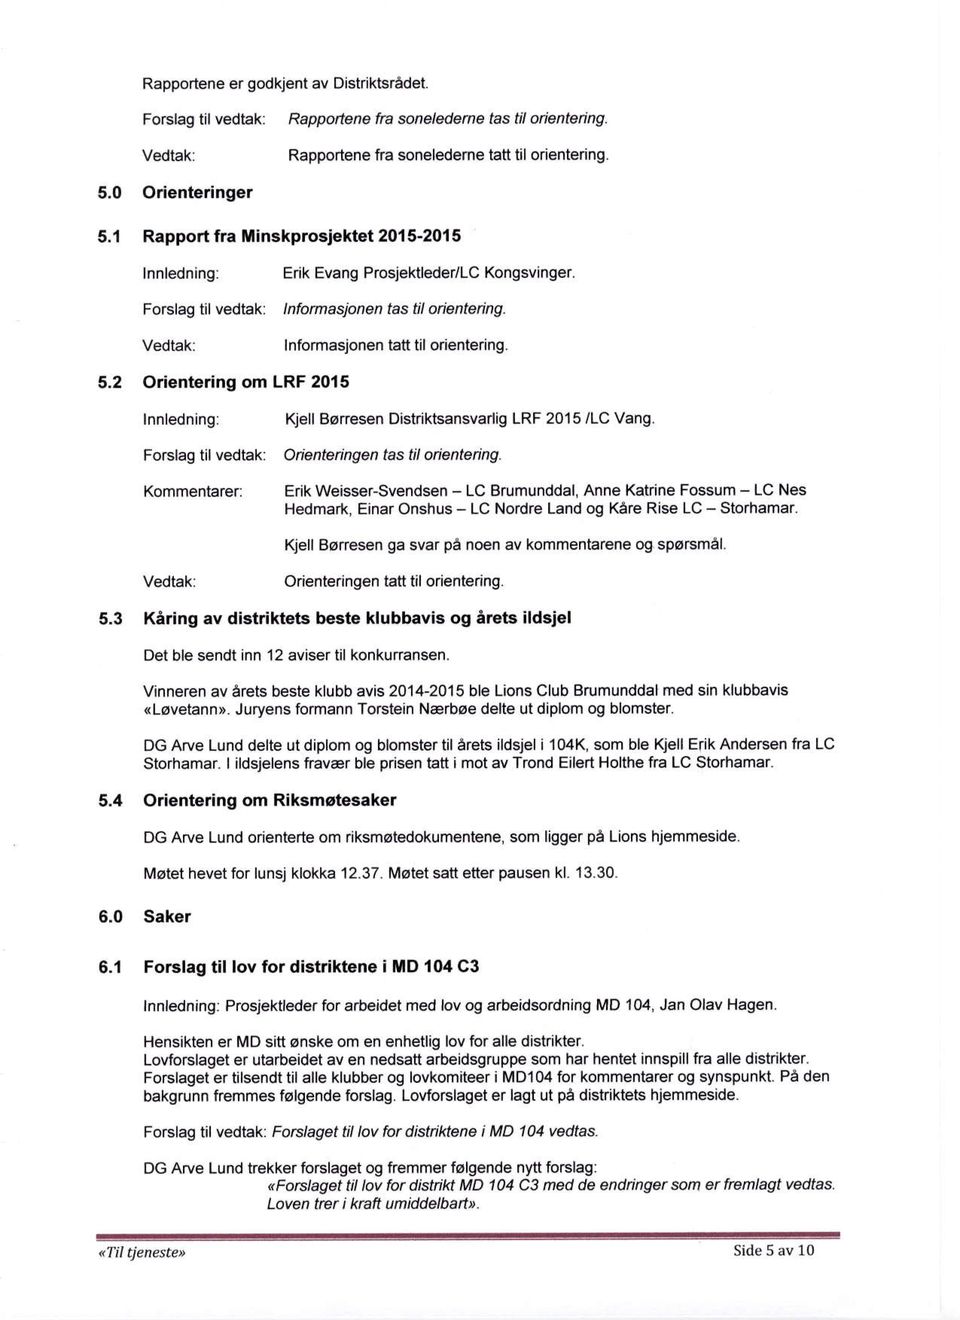 5,2 Orieniering om LRF 2015 Innledning: Kjell Borresen Distriktsansvarlig LRF 2015 /LC Vang. Fo$fag tif vedtak: Odontedngen tastil orientenng.